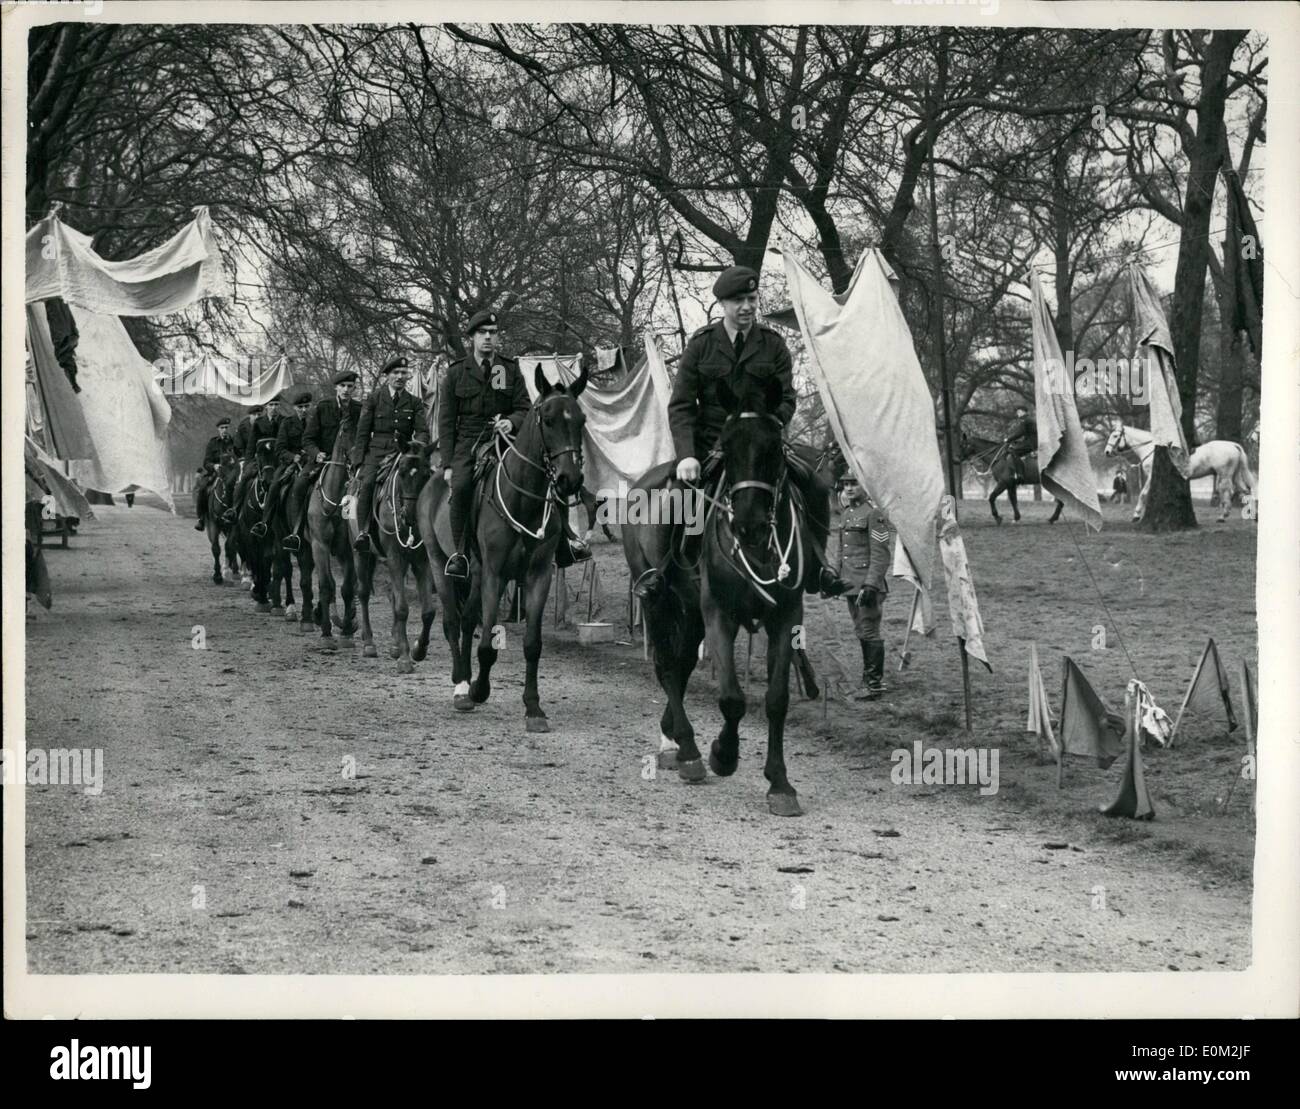 Avril 04, 1953 - Les bénévoles à l'usage des chevaux Train V.I.P's Coronation pendant... Camp dans Hyde Park... Un camp a été mis en place dans Hyde Park pour la formation des chevaux pour être utilisé par V.I.P, de l'arborescence services - pendant la cérémonie de couronnement. Les chevaux dont aucun n'a encore été sur les routes - sont formés par des bénévoles de la Royal Army Veterinary Corps et de la Gendarmerie royale du Canada - pour une formation similaire.. Ils sont habitués au bruit et l'agitation associés à la Coronation.. Photo : Keystone montre R.A.F Banque D'Images